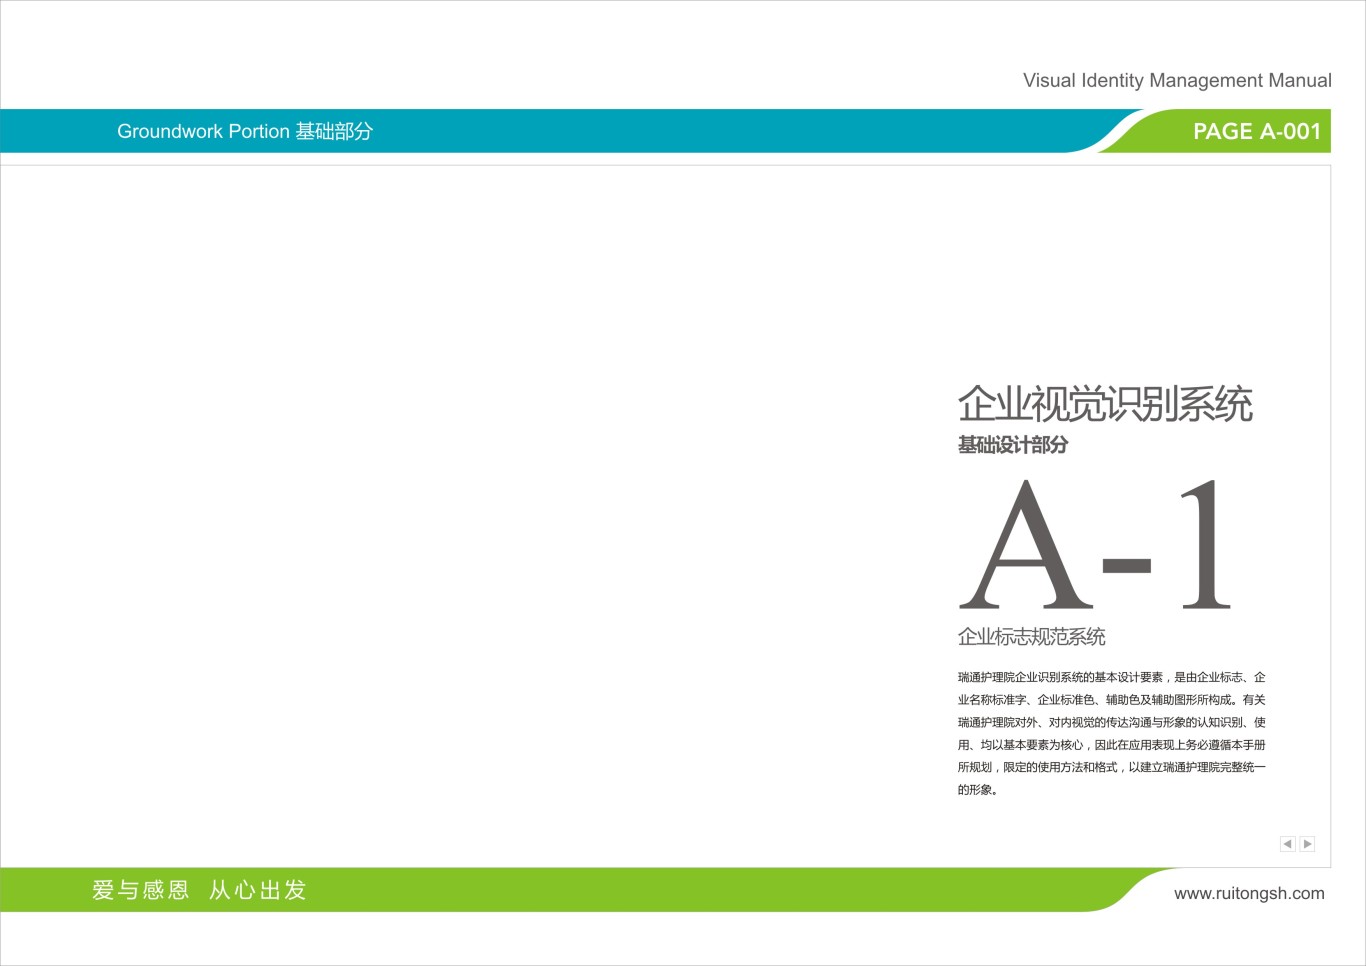 上海瑞通护理院标志VI设计图10